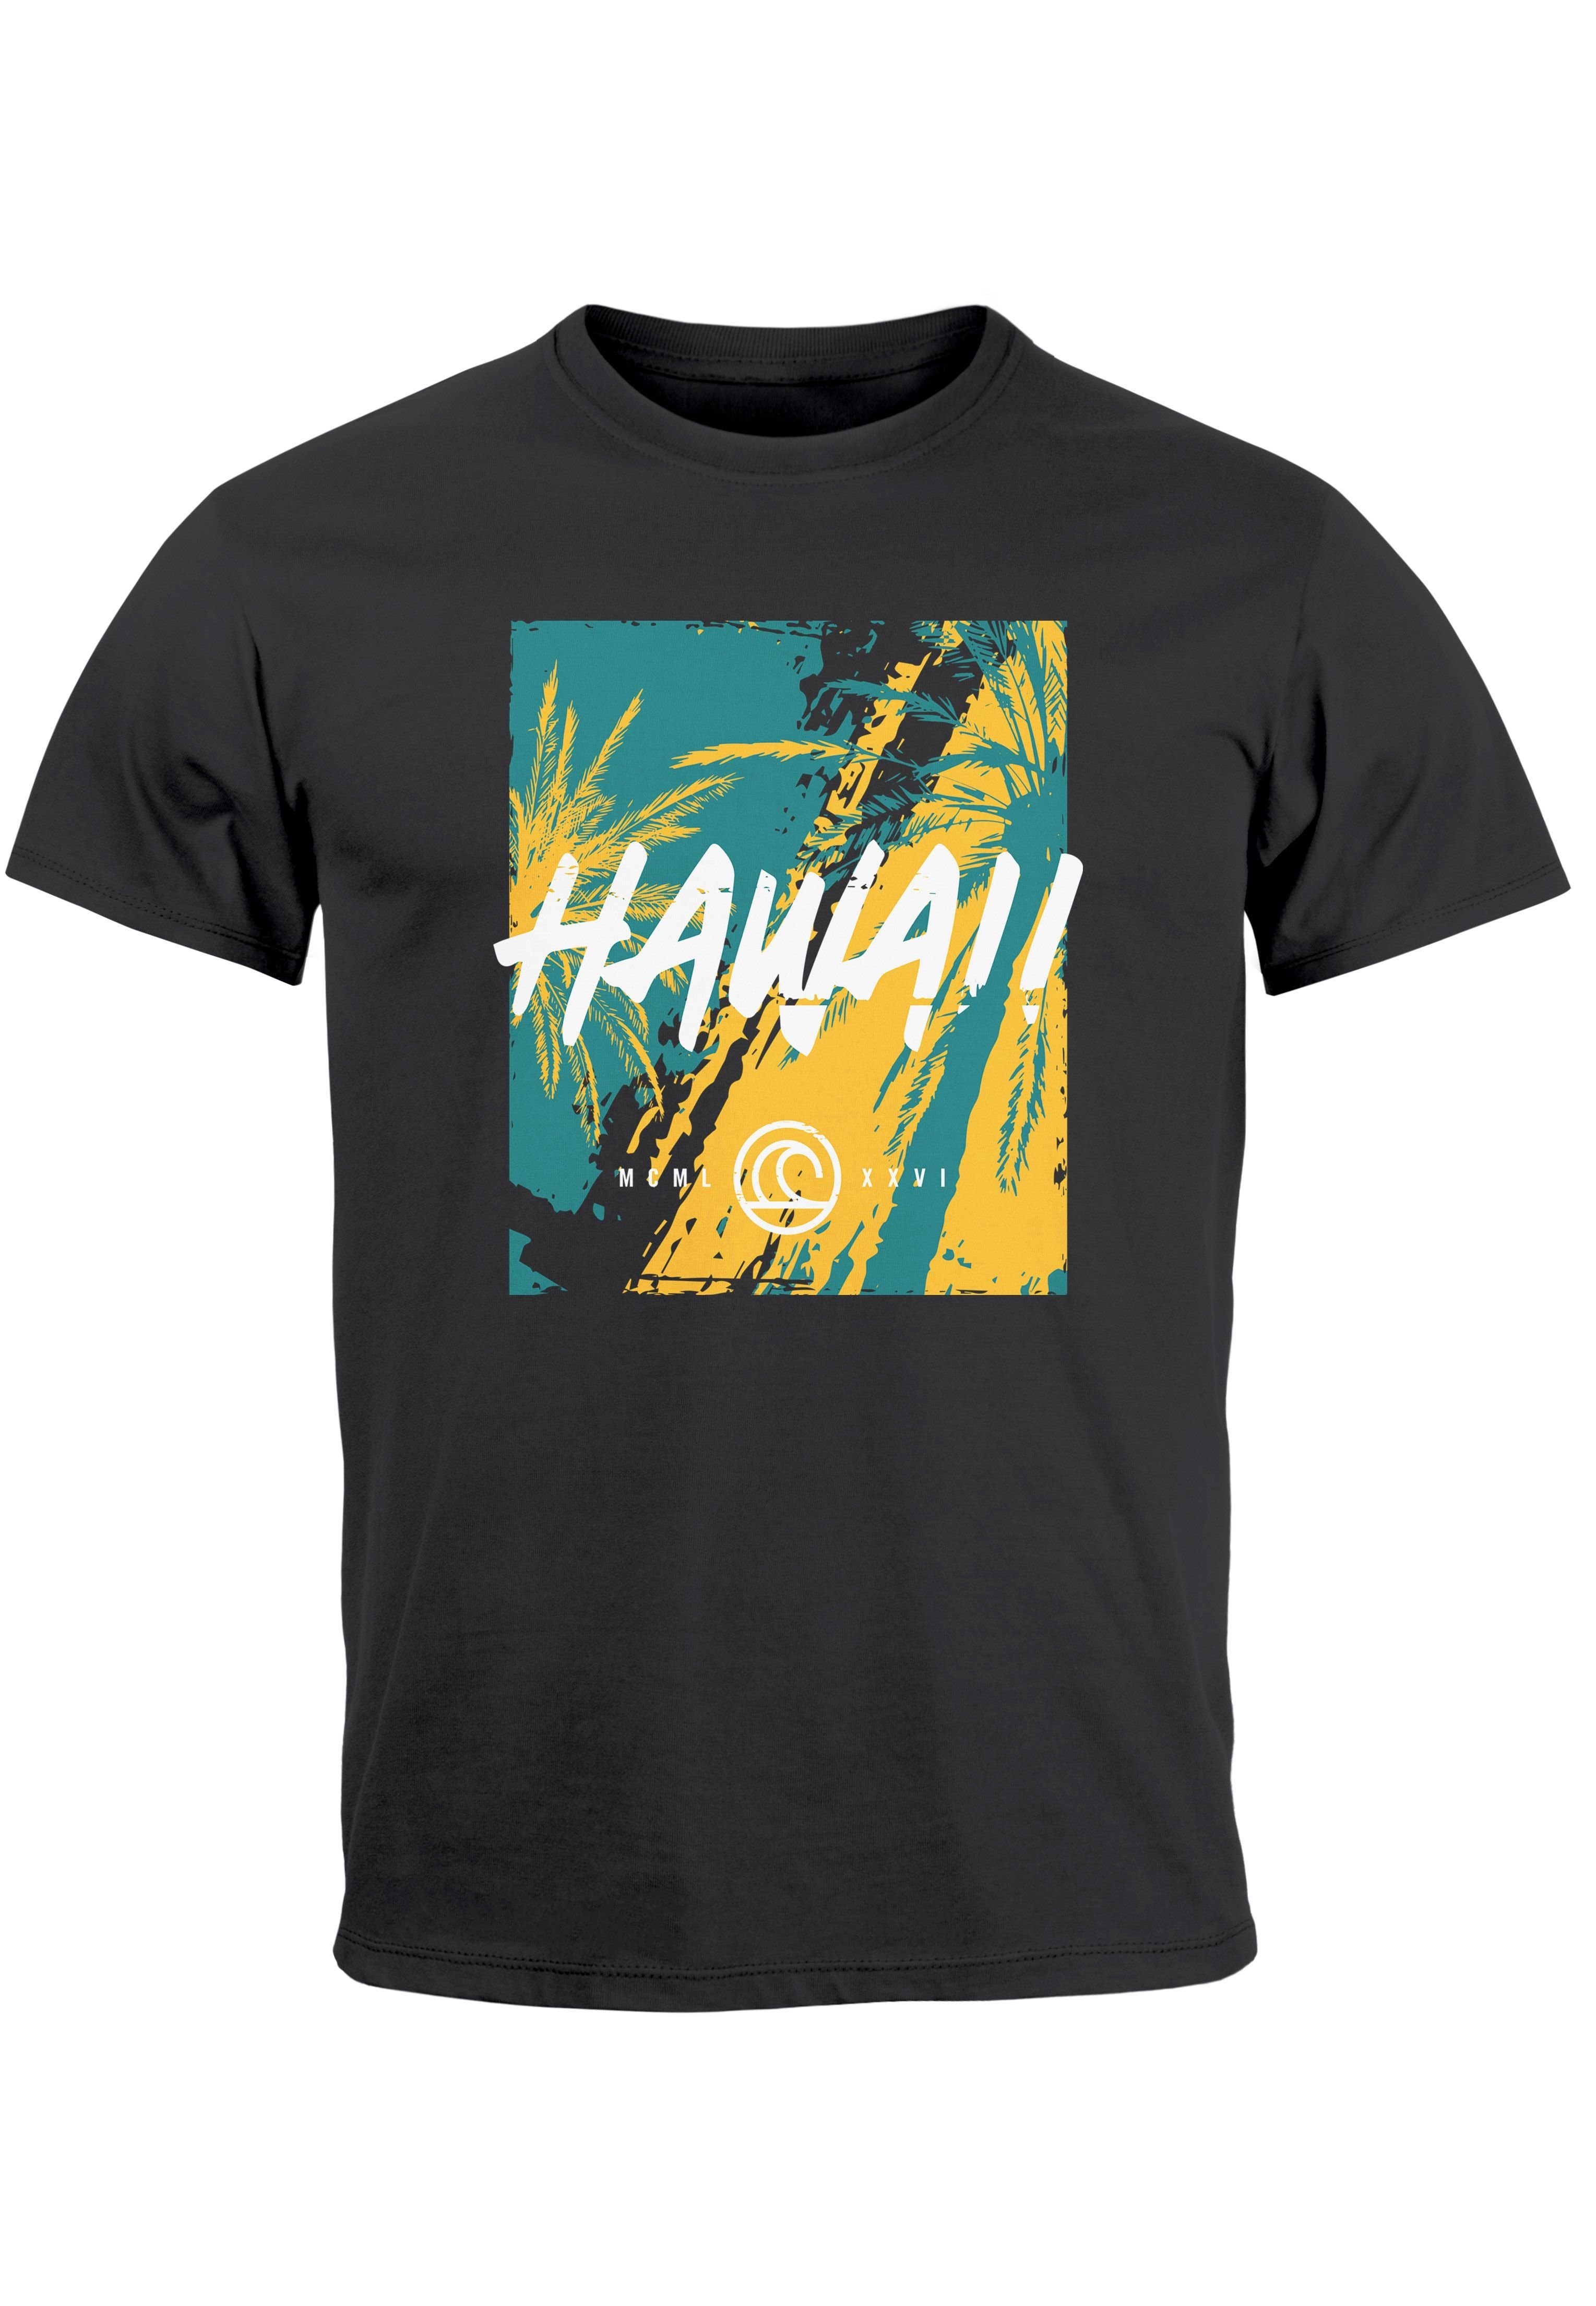 Neverless Print-Shirt Herren T-Shirt Palmen Str Surfing Fashion Aufdruck dunkelgrau Sommer Hawaii Print mit Print